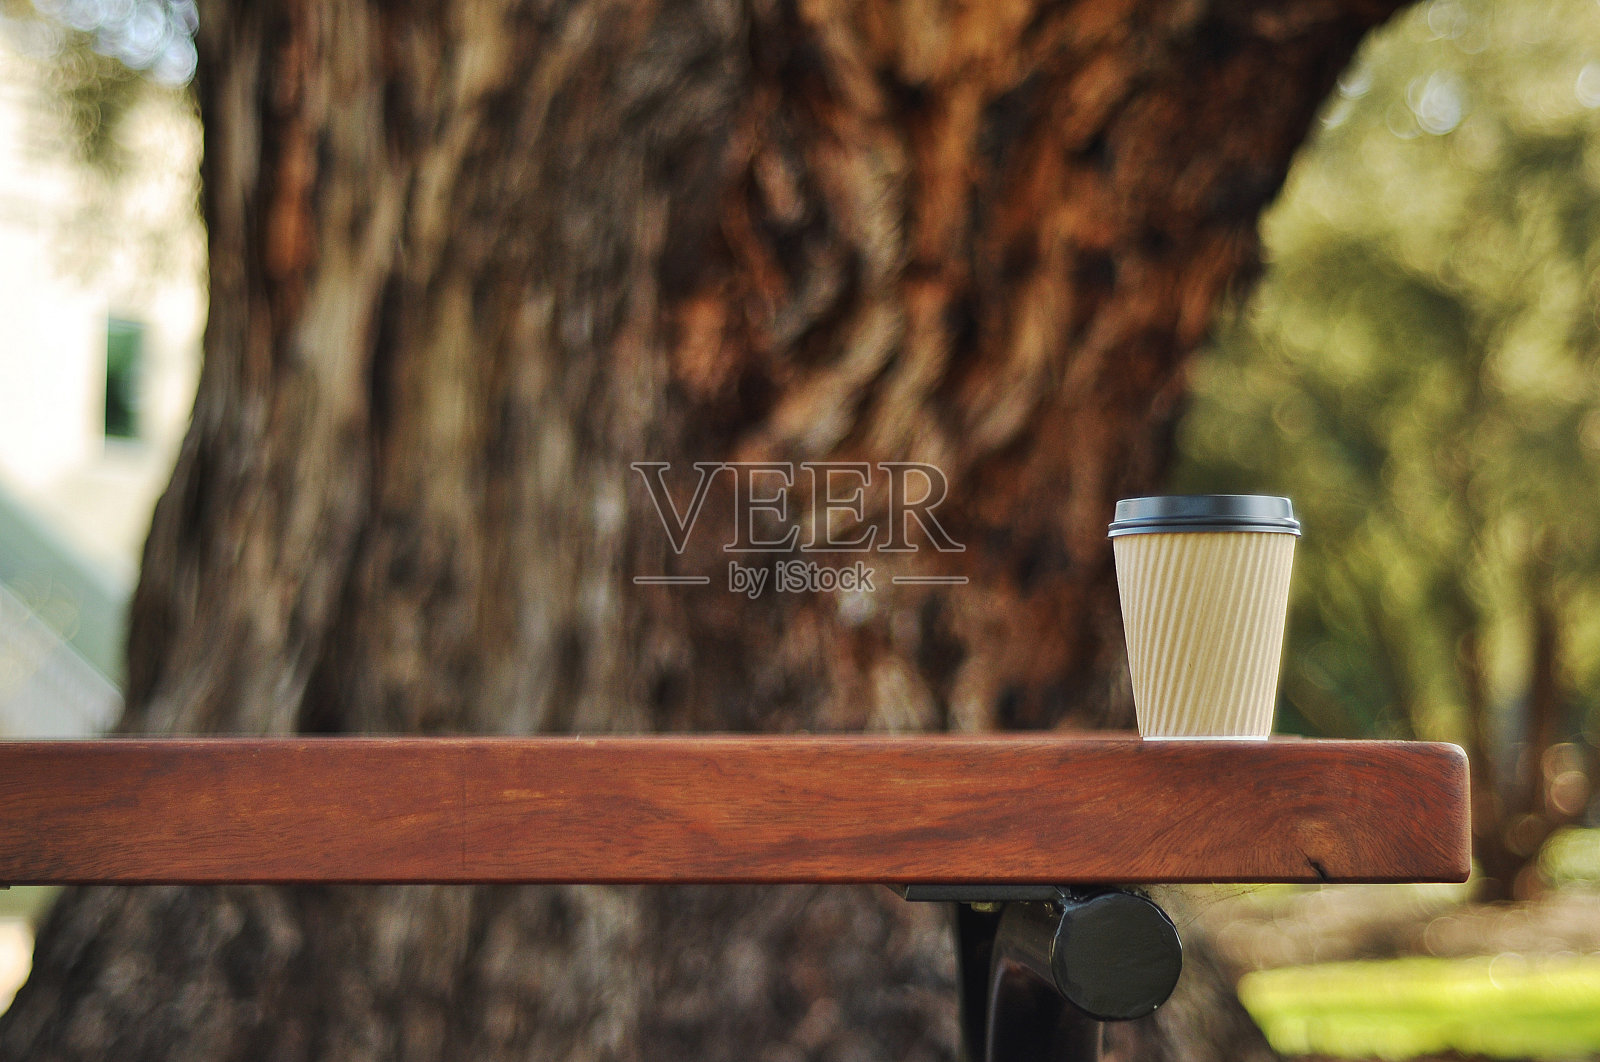 咖啡杯放在公园的户外桌子上照片摄影图片